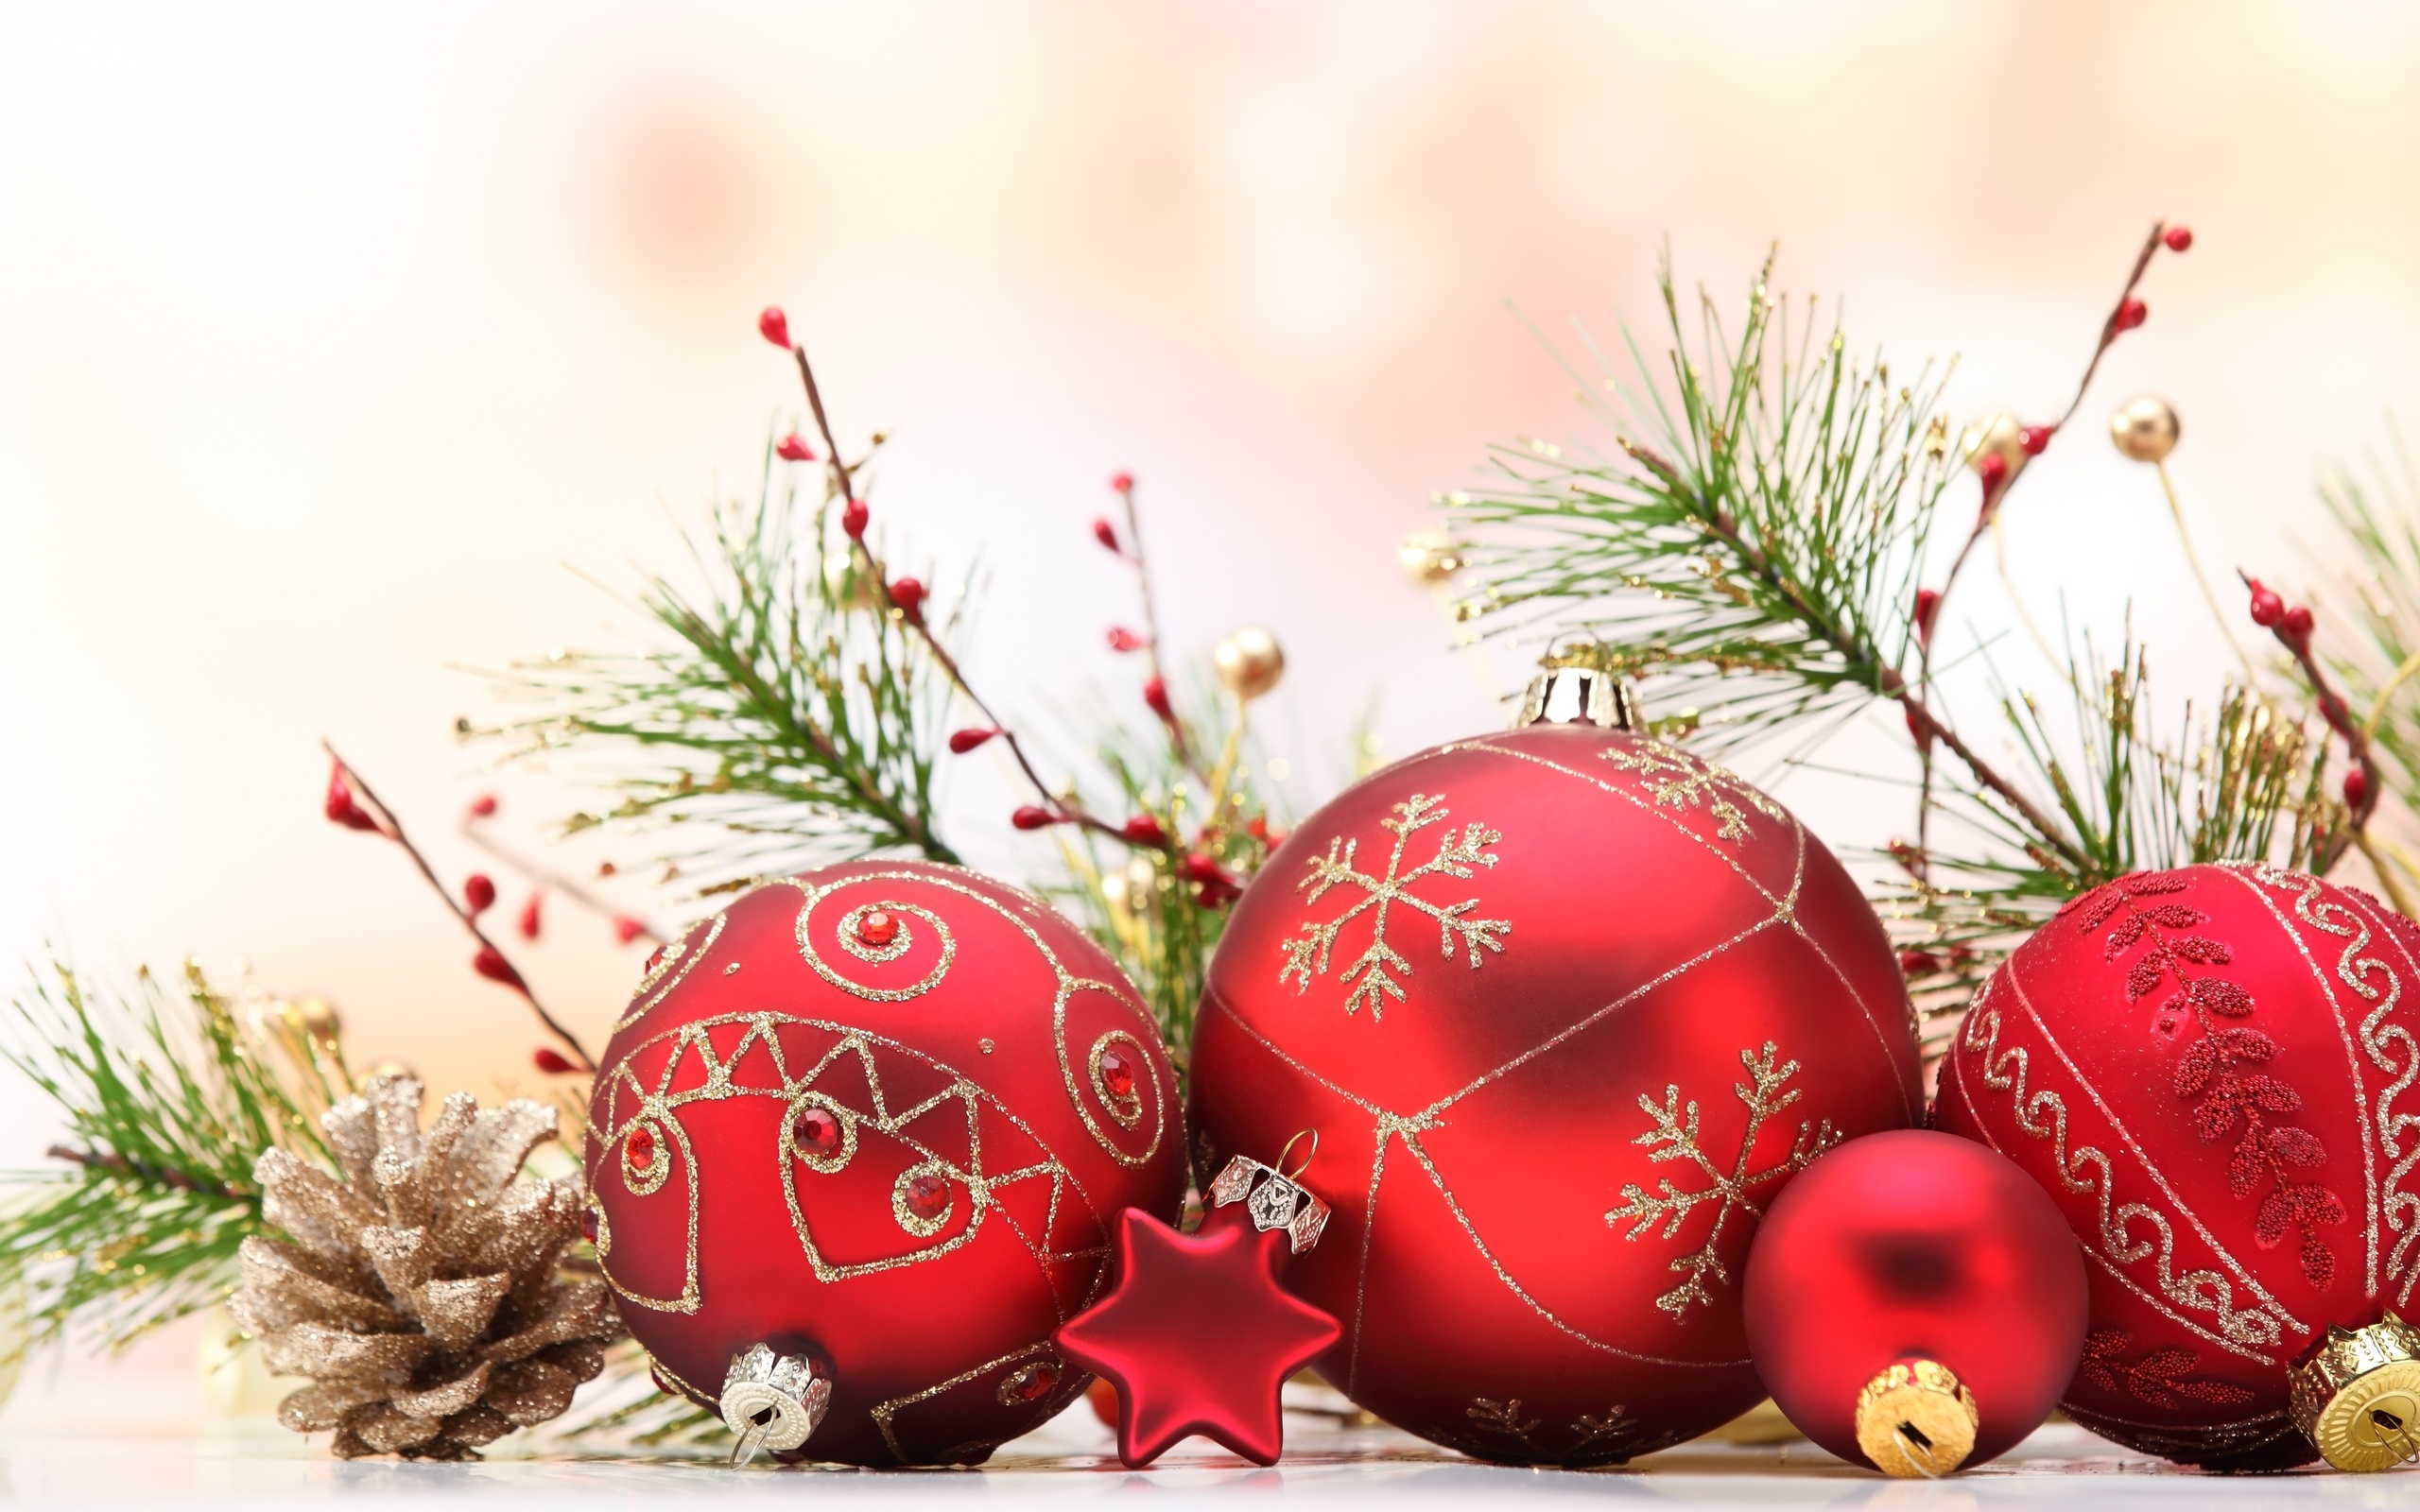 クリスマスの飾りの壁紙,クリスマスオーナメント,クリスマスの飾り,クリスマスツリー,クリスマス,モミ